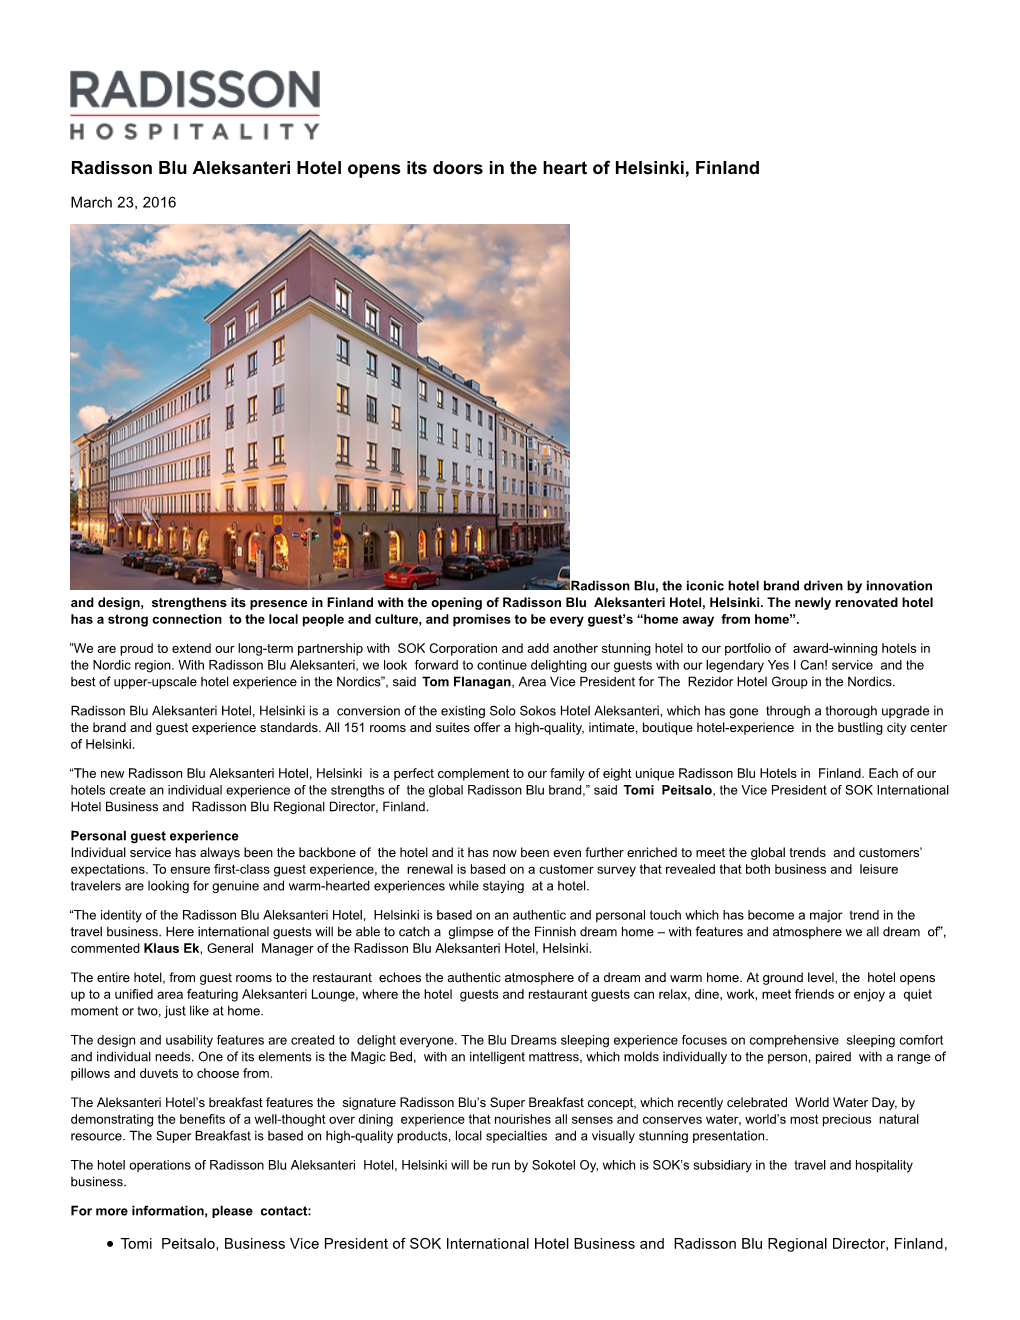 Radisson Blu Aleksanteri Hotel Opens Its Doors in the Heart of Helsinki, Finland